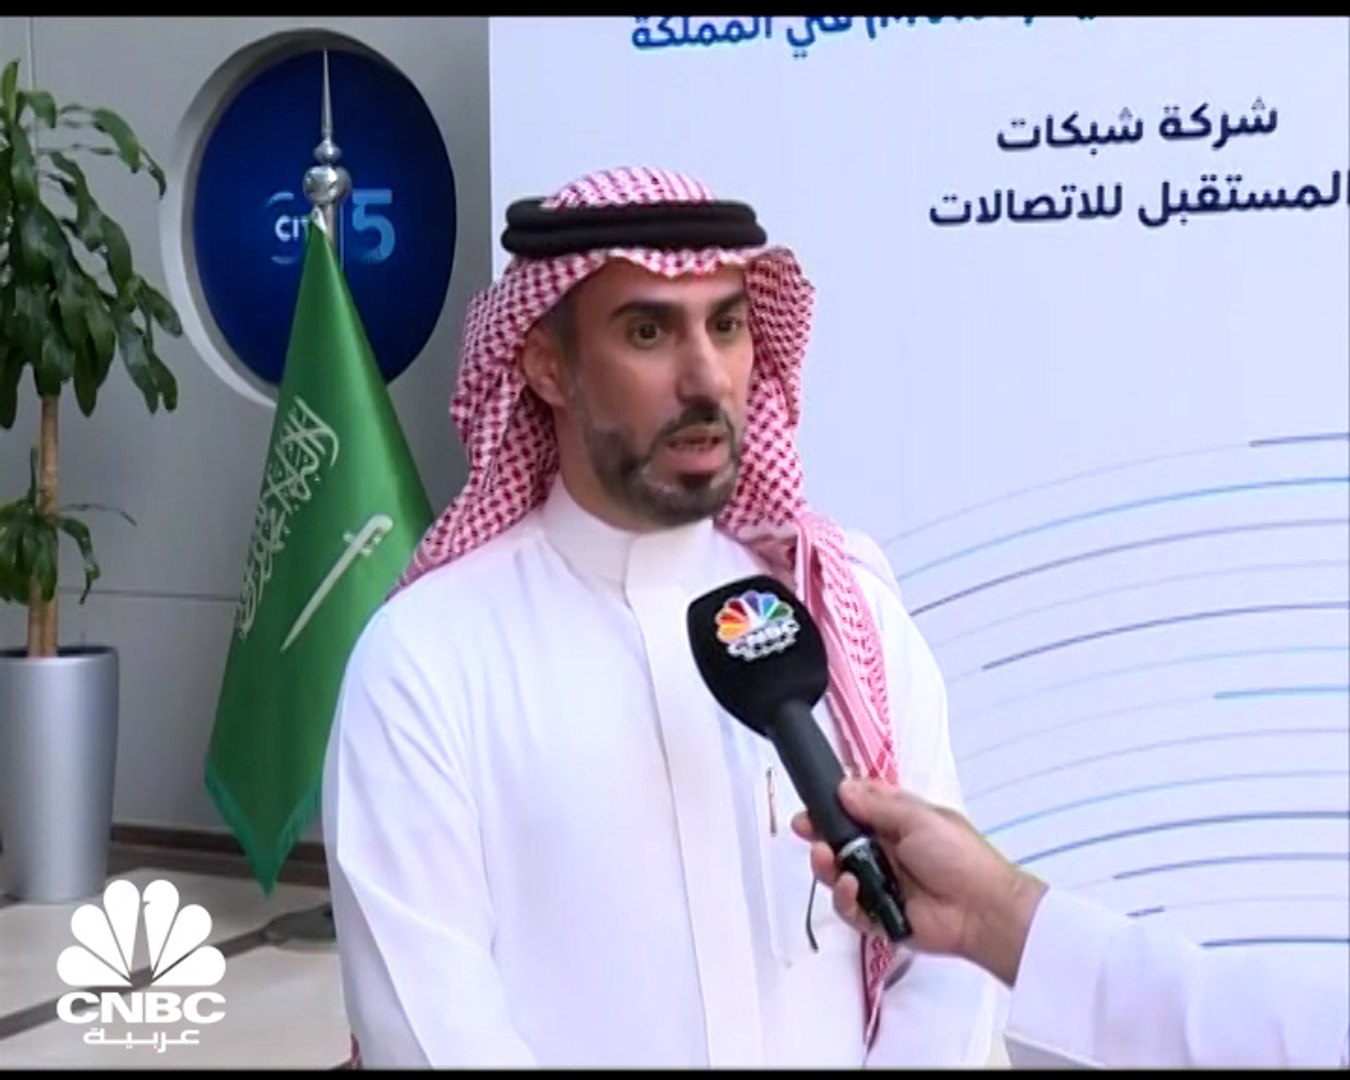 رئيس مجلس إدارة "شبكات المستقبل للاتصالات" السعودية لـ CNBC عربية: شركات  الاتصالات الافتراضية تحاول الاستحواذ على 10-20% من السوق - video Dailymotion